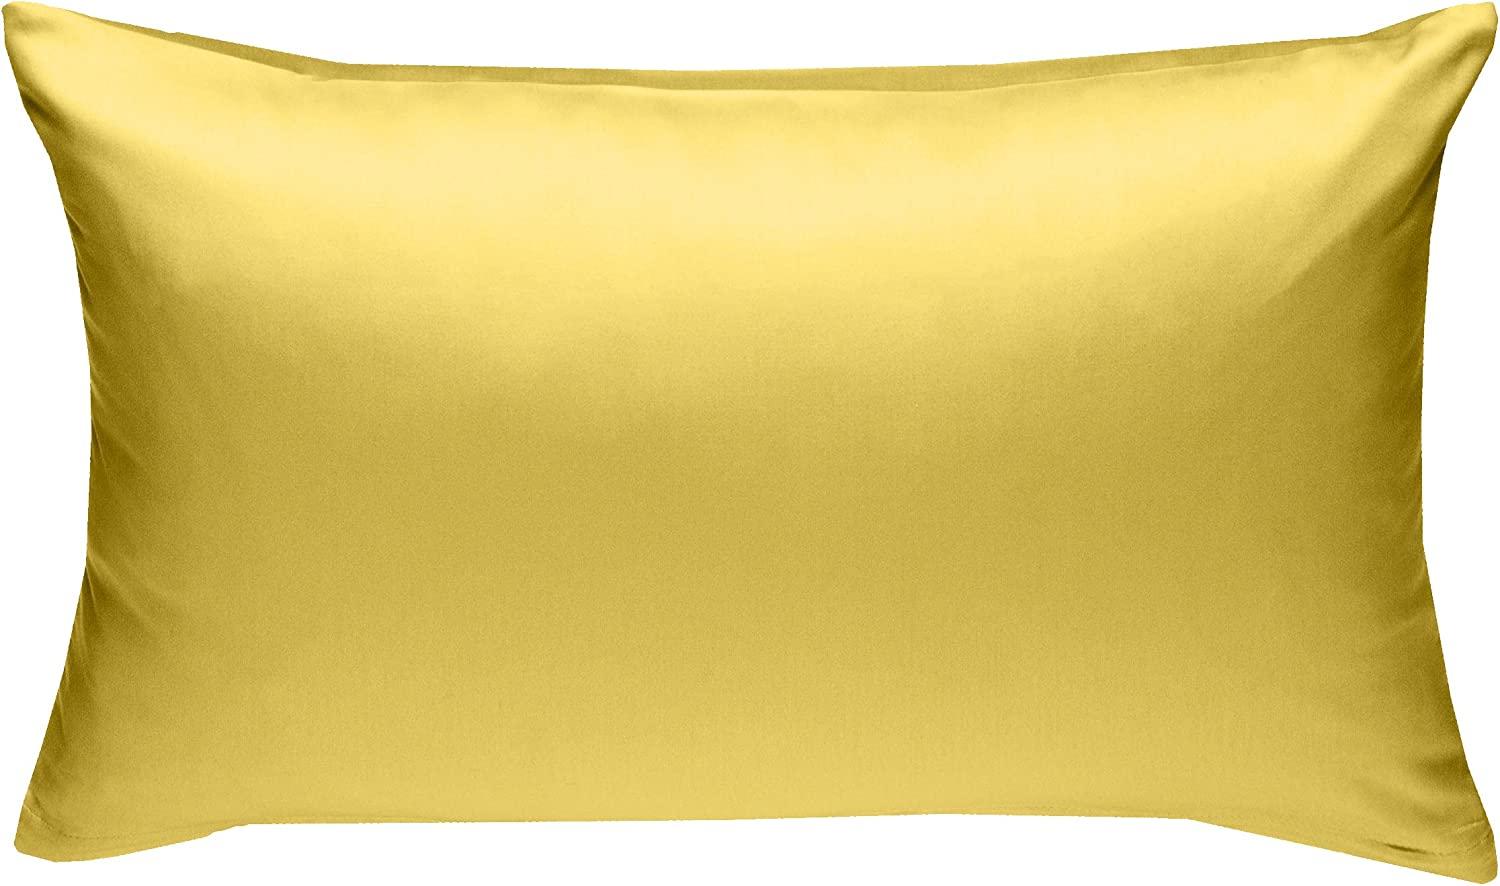 Bettwaesche-mit-Stil Mako-Satin / Baumwollsatin Bettwäsche uni / einfarbig gelb Kissenbezug 50x70 cm Bild 1